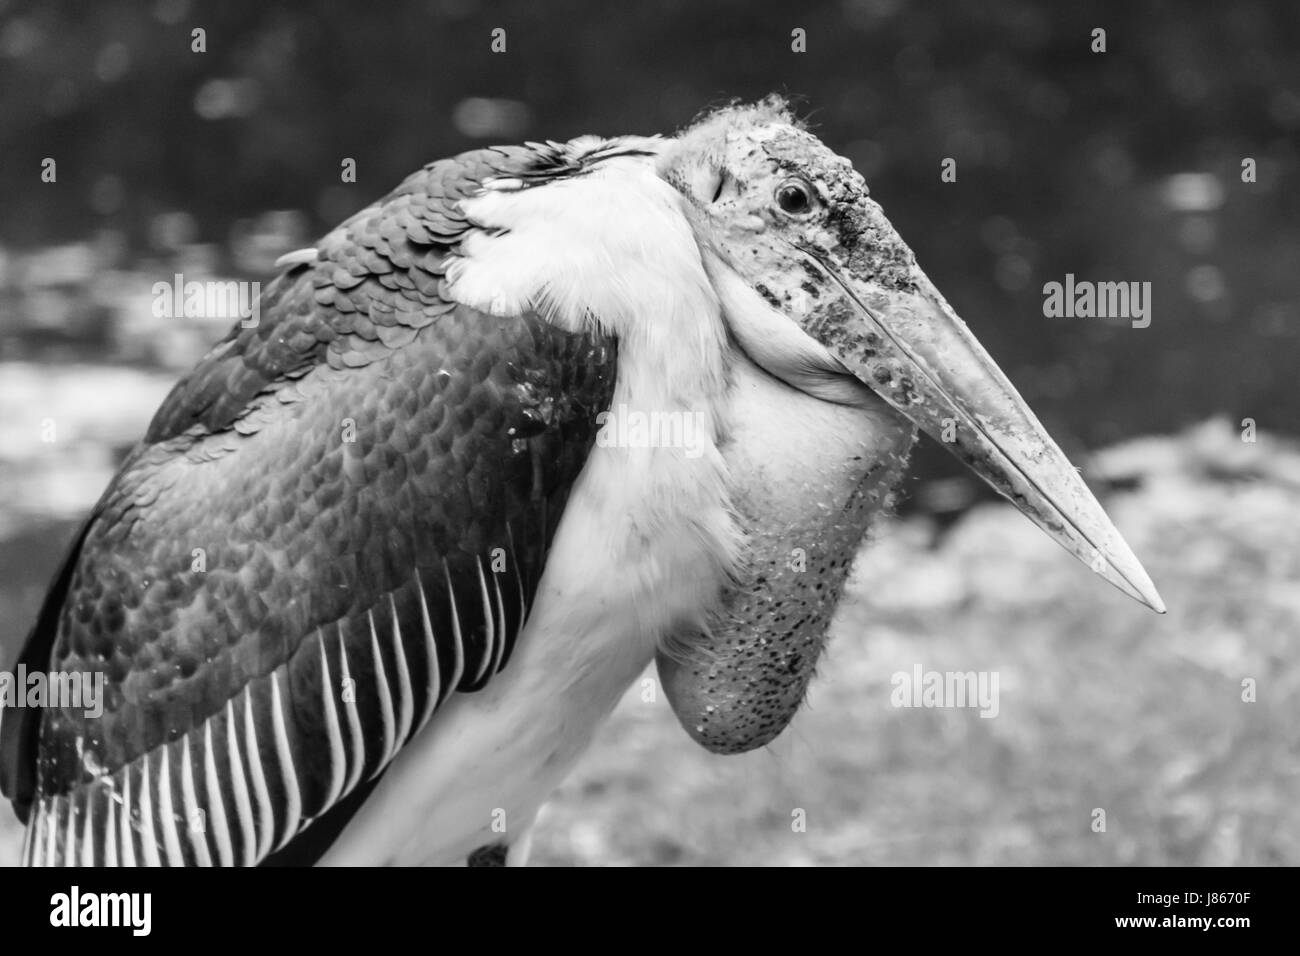 Vulture bird brutto pelle in appoggio sul terreno in bianco e nero Foto Stock